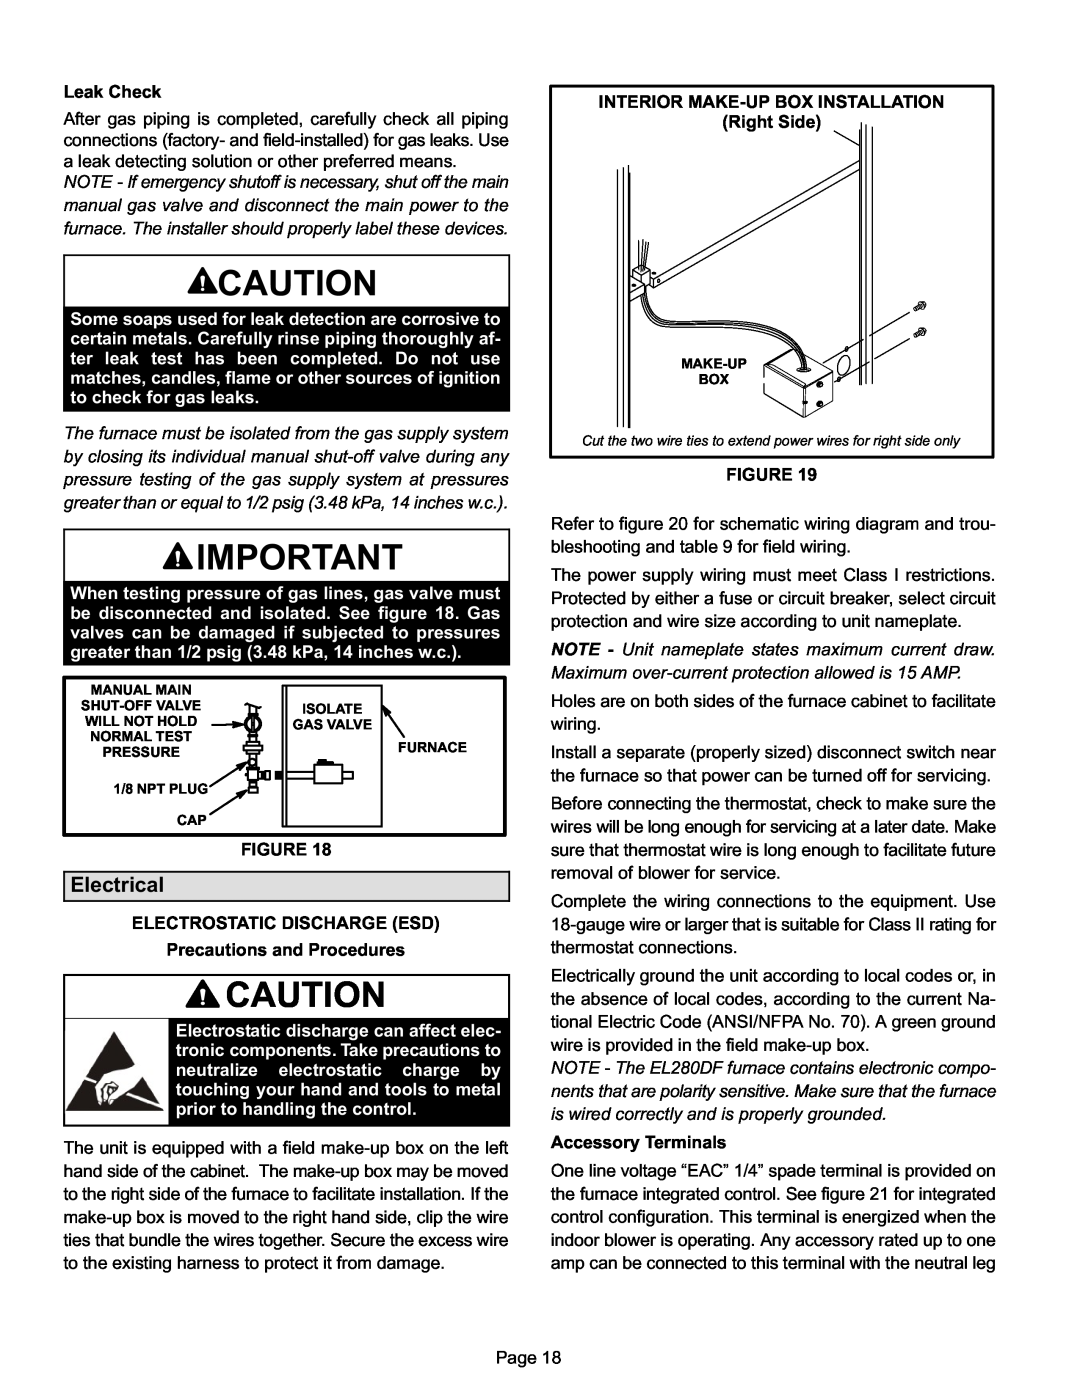 Lennox International Inc EL280DF installation instructions Electrical 